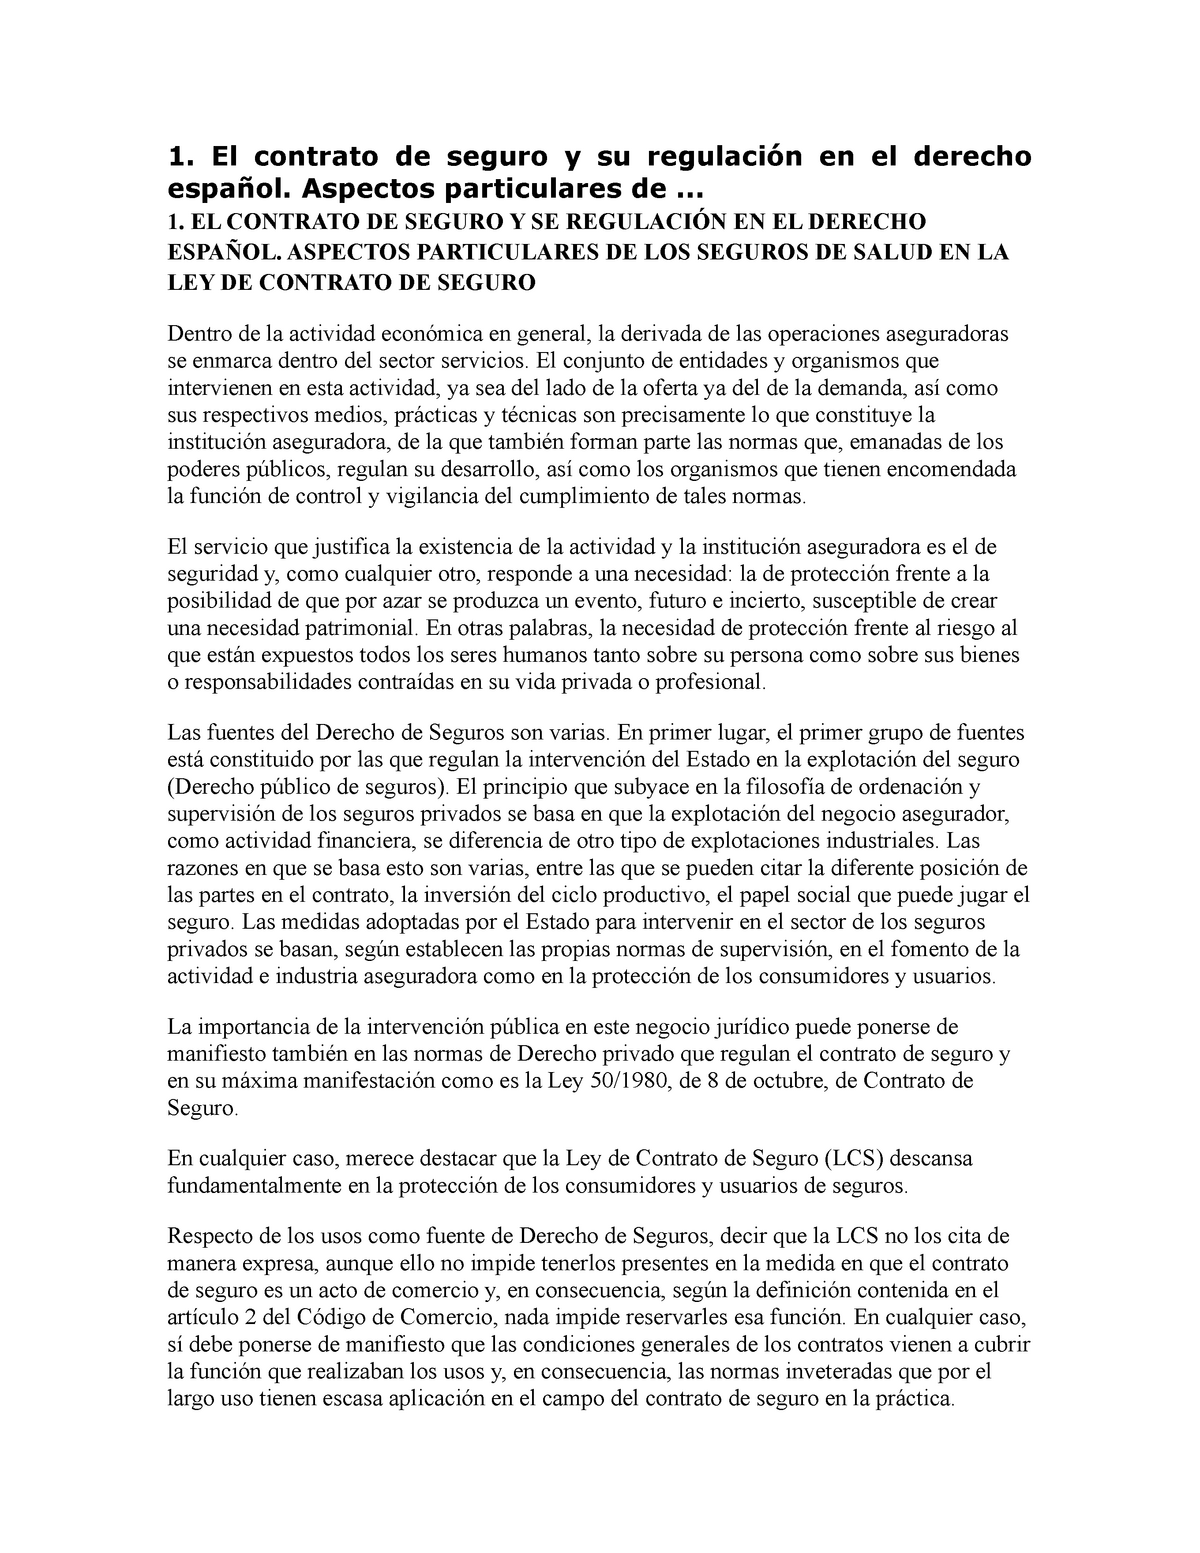 El Contrato De Seguro Y Se Regulación En El Derecho Español 1 El Contrato De Seguro Y Su 0113